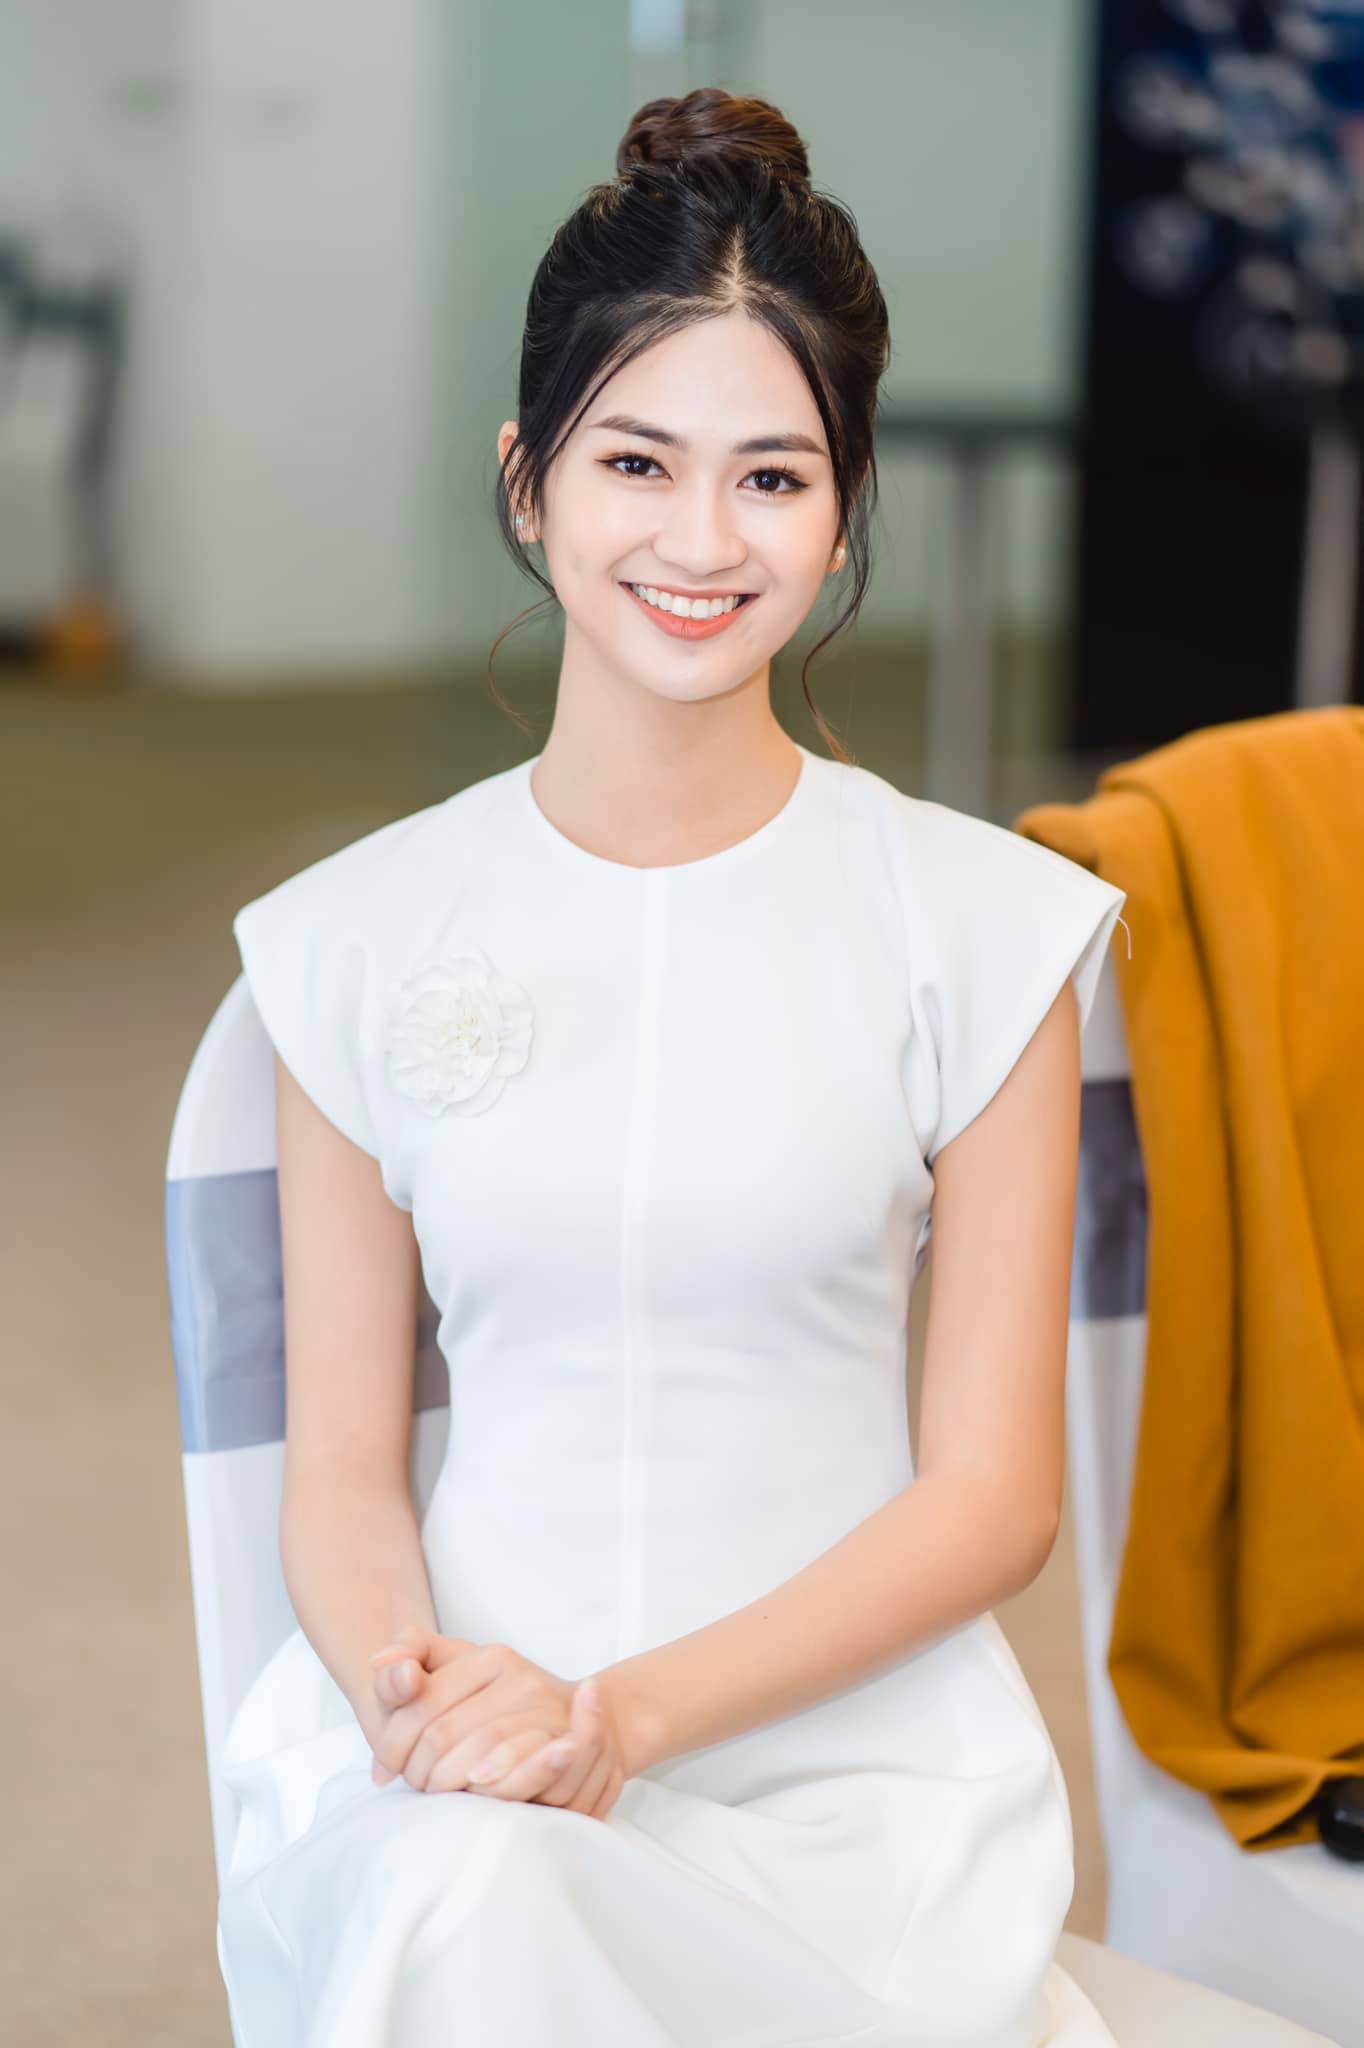 Cận cảnh nhan sắc người đẹp Hoa hậu Việt Nam dẫn bản tin VTV - Ảnh 10.